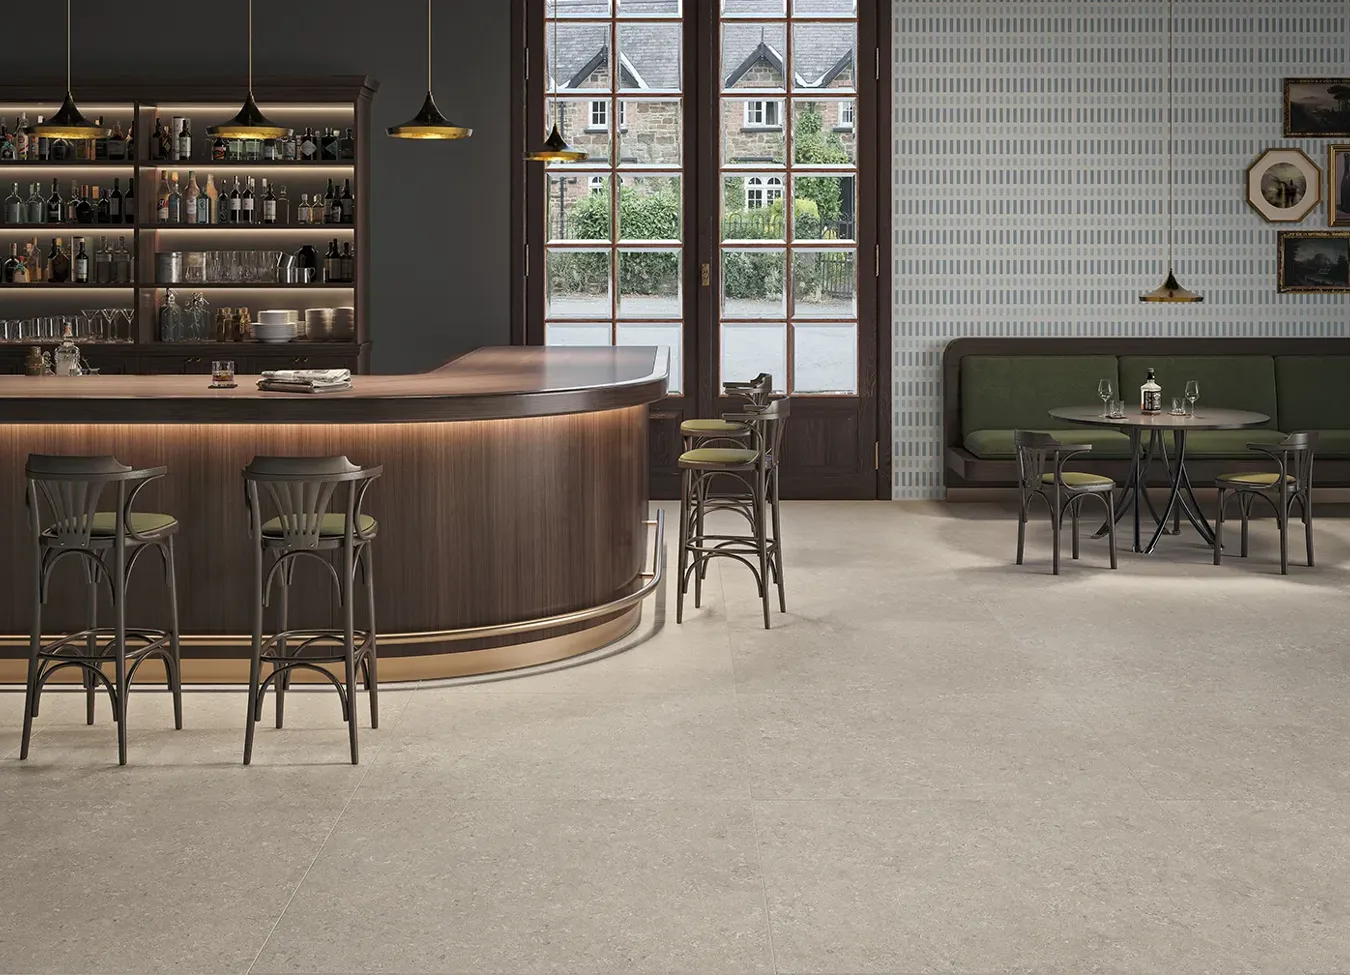 Suelo de gres porcelánico efecto piedra gris en una cafetería elegante con mobiliario de madera.